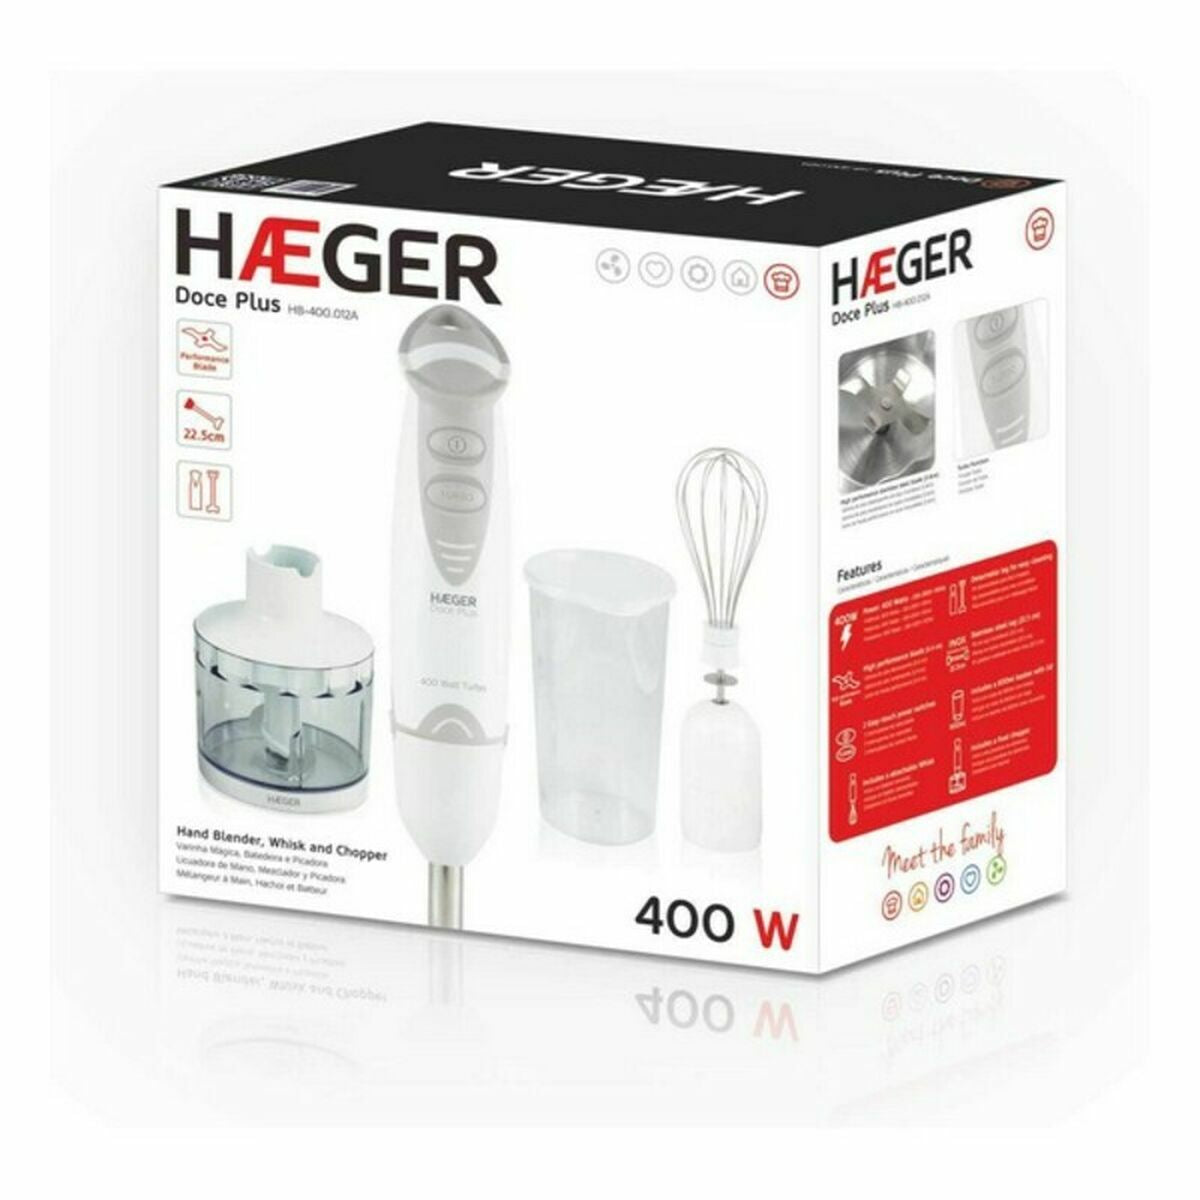 Kaufe Handrührgerät Haeger HB-400.012A Weiß 400 W 400W bei AWK Flagship um € 52.00